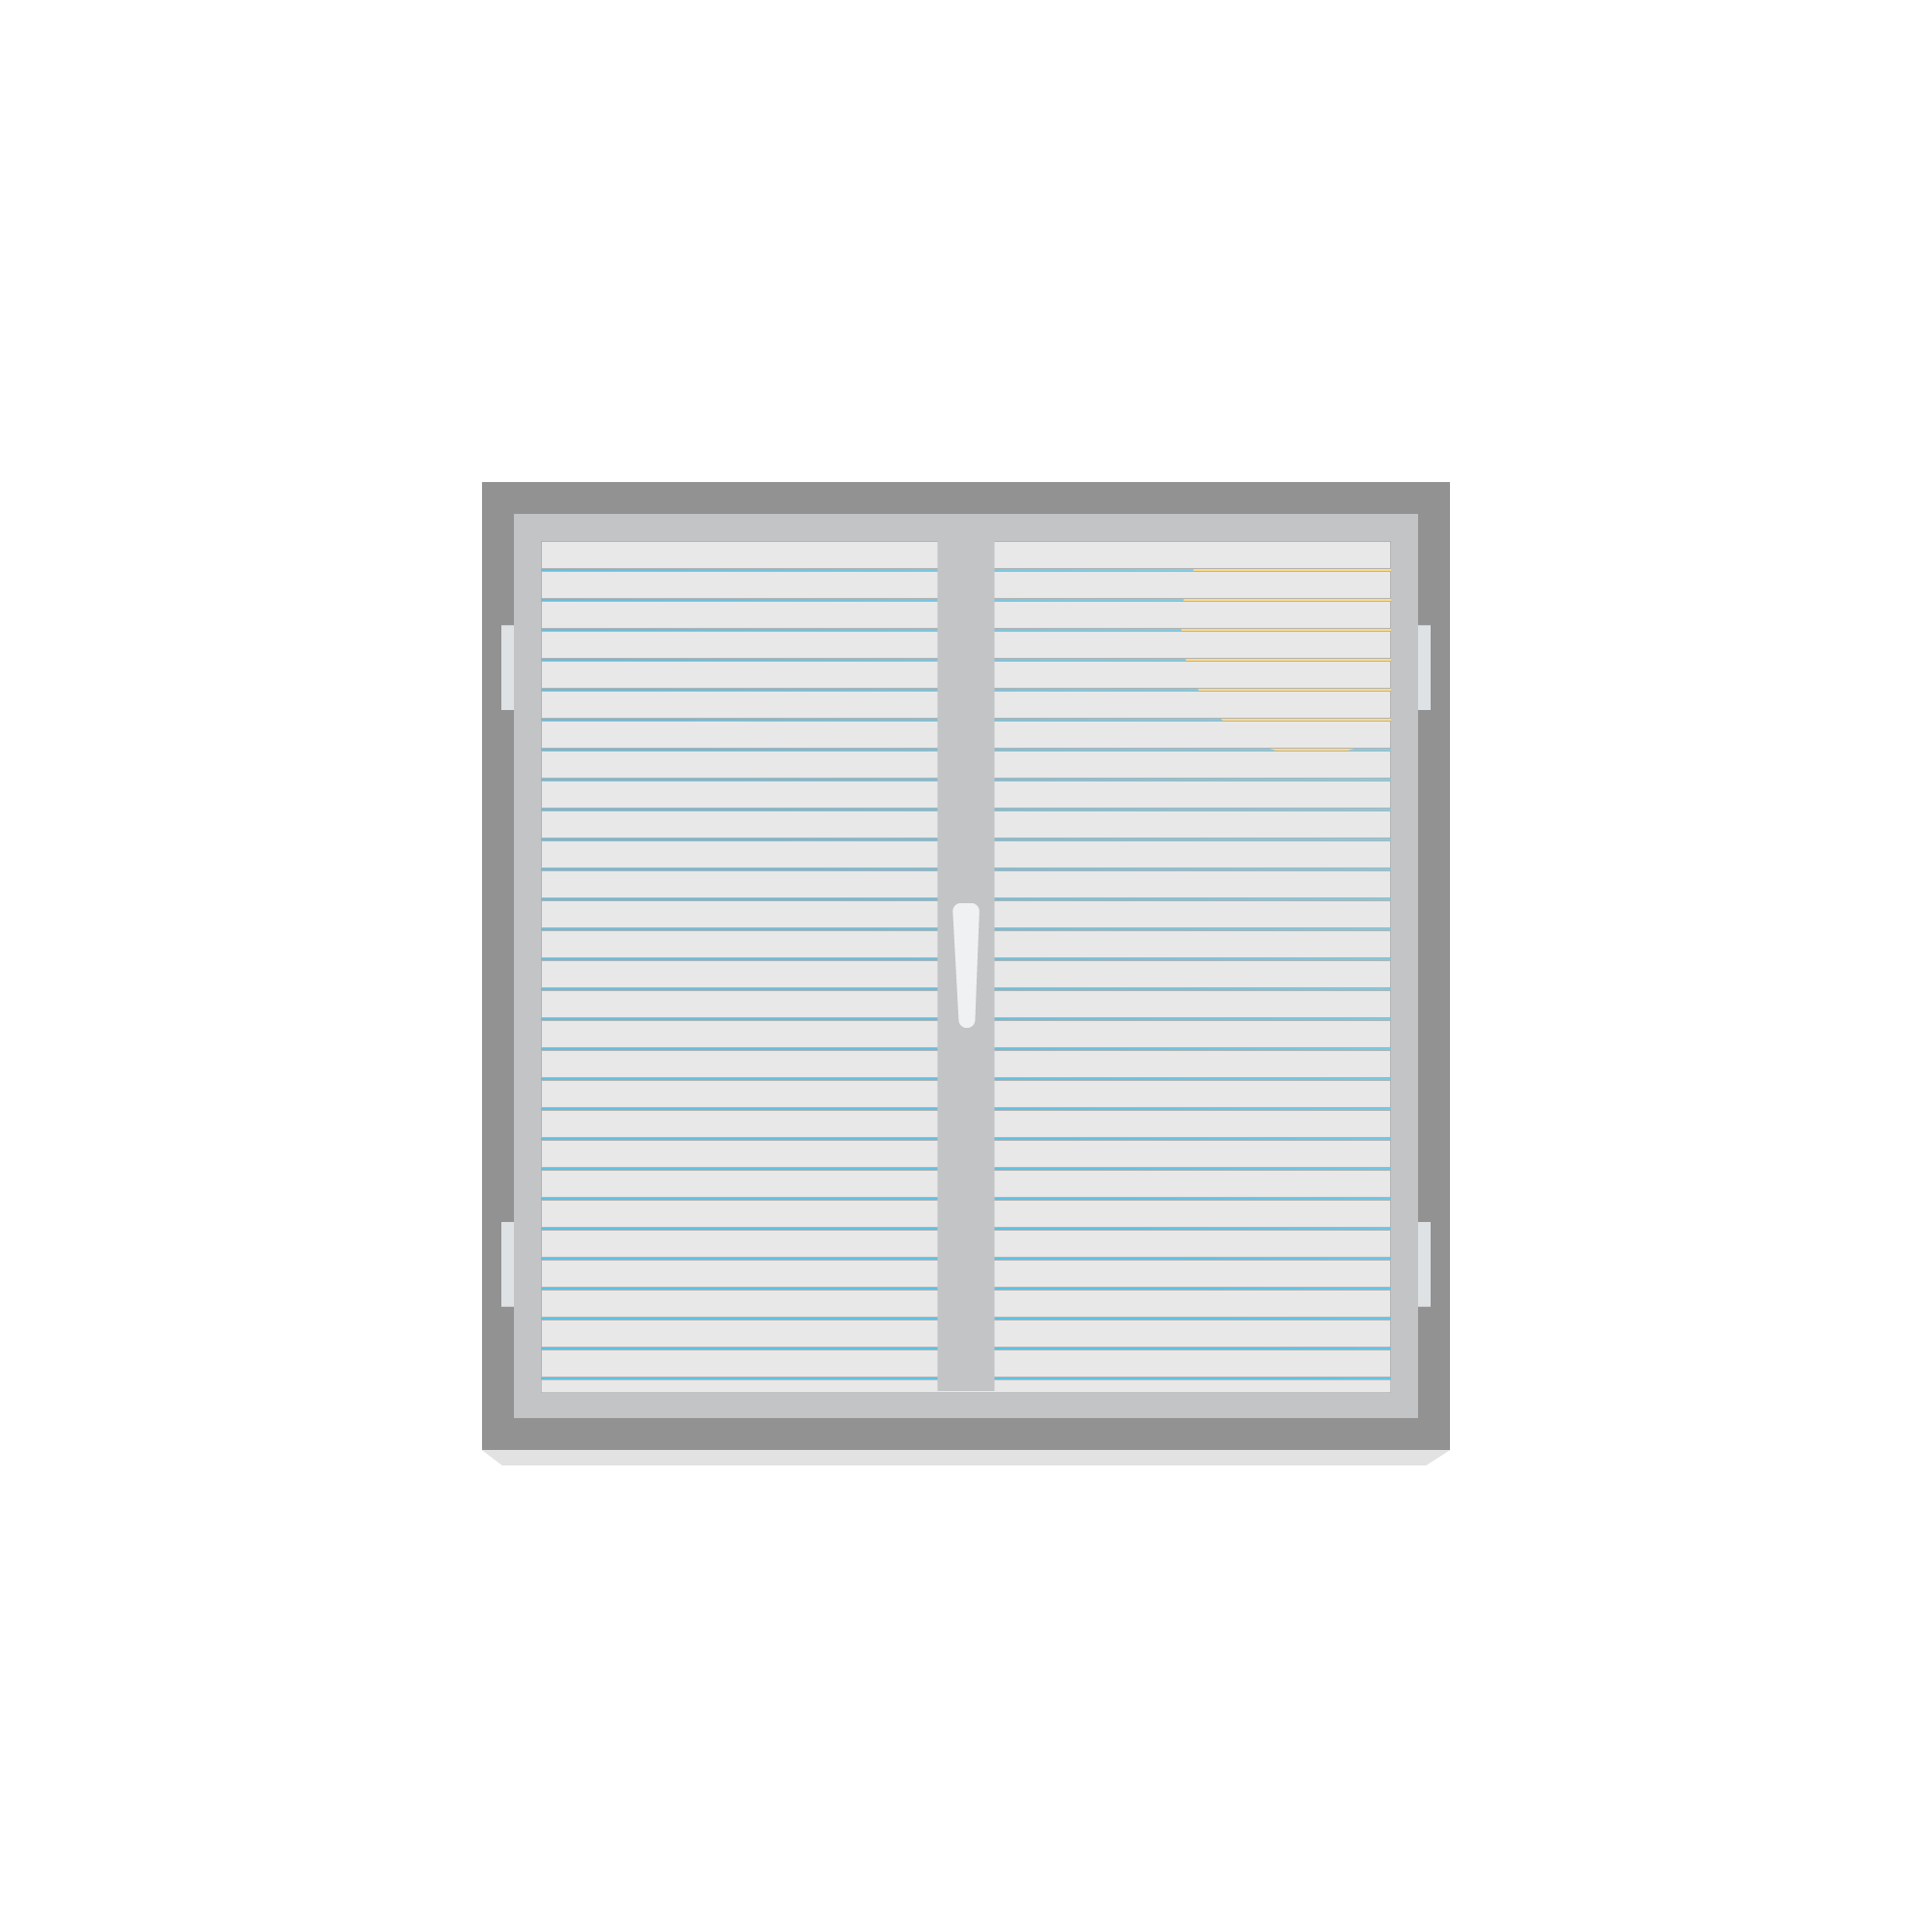 Zeichnung eines Fensters mit geschlossenen Jalousien